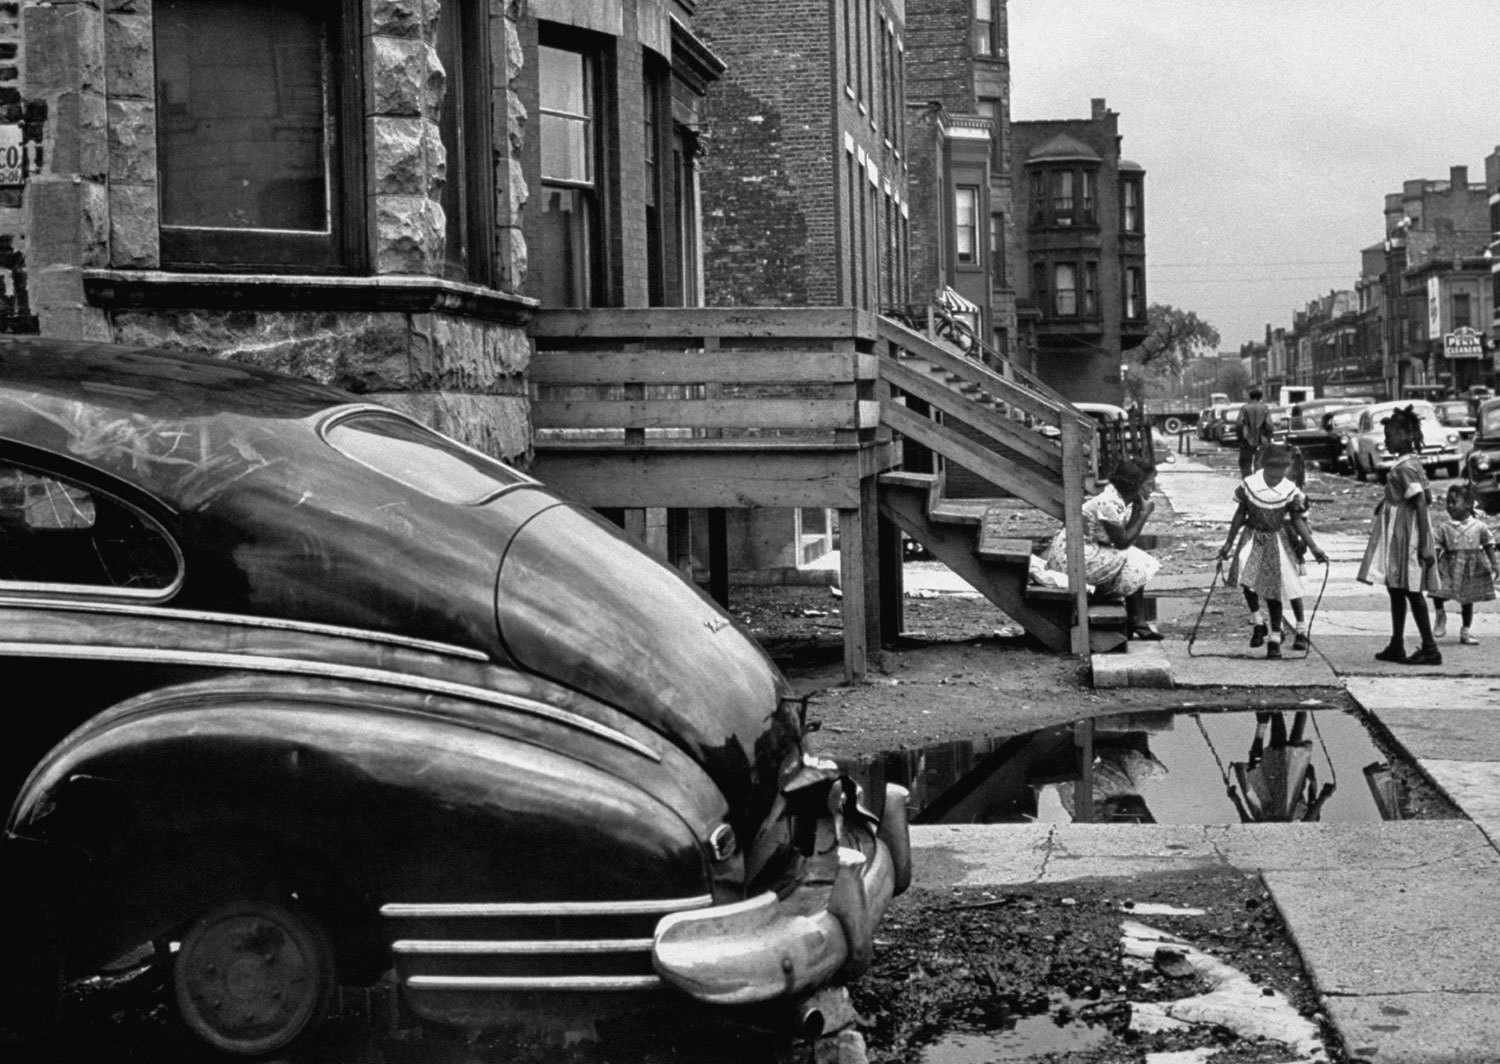 Street scene, Chicago, 1954.